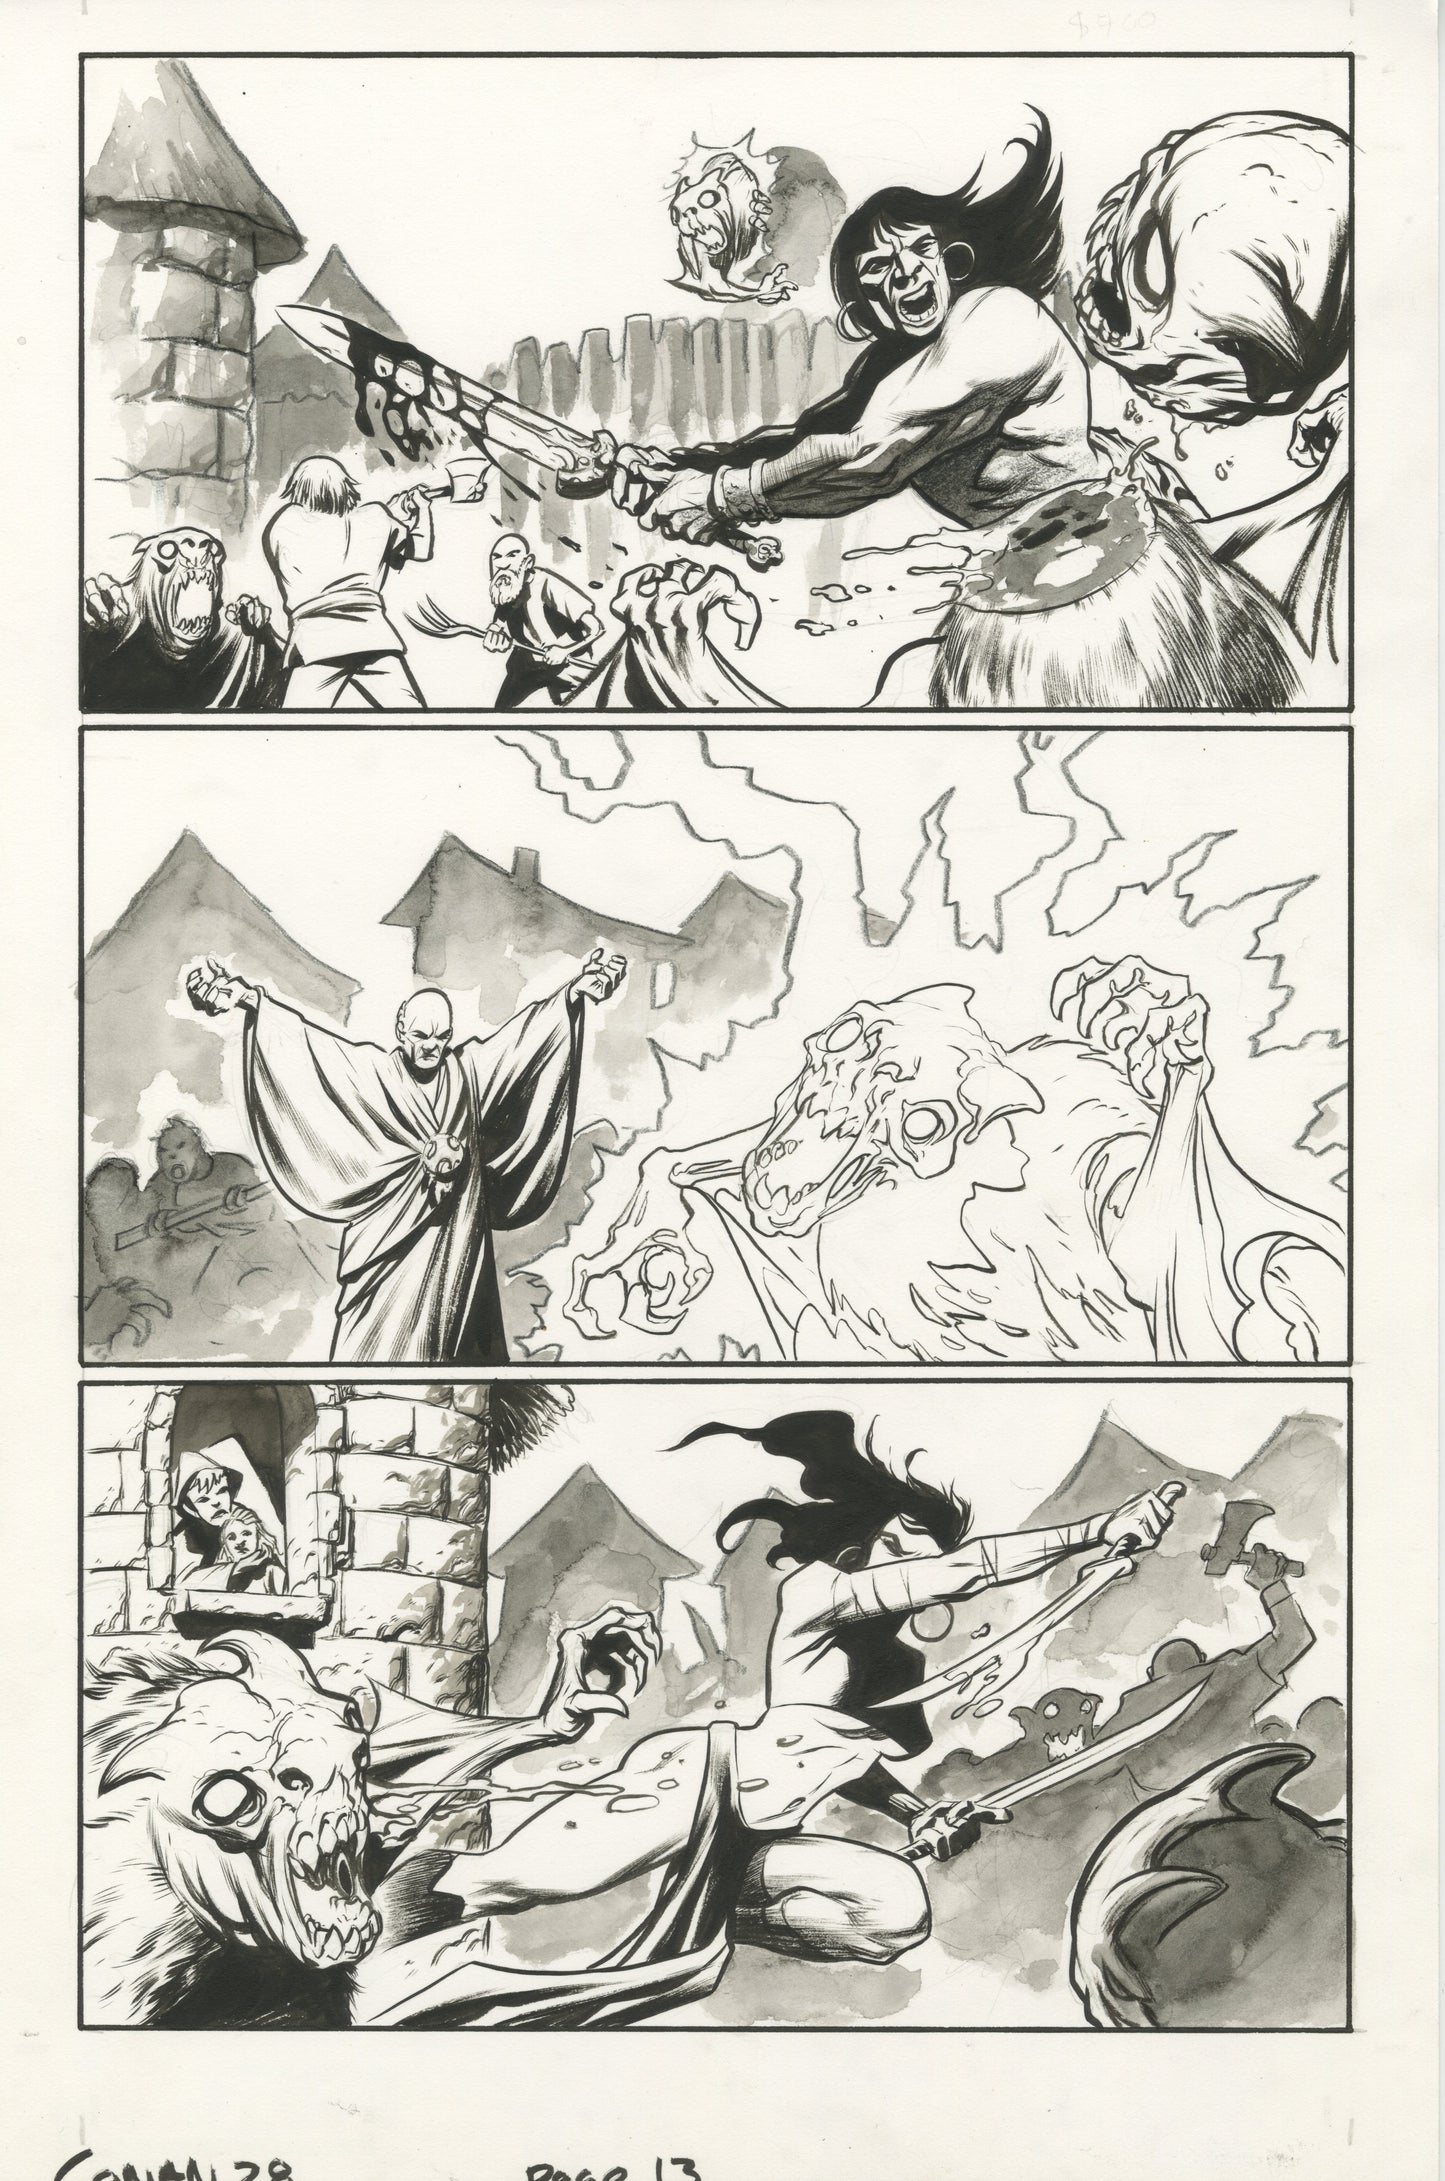 Conan #28, page #13 (2006, Dark Horse)